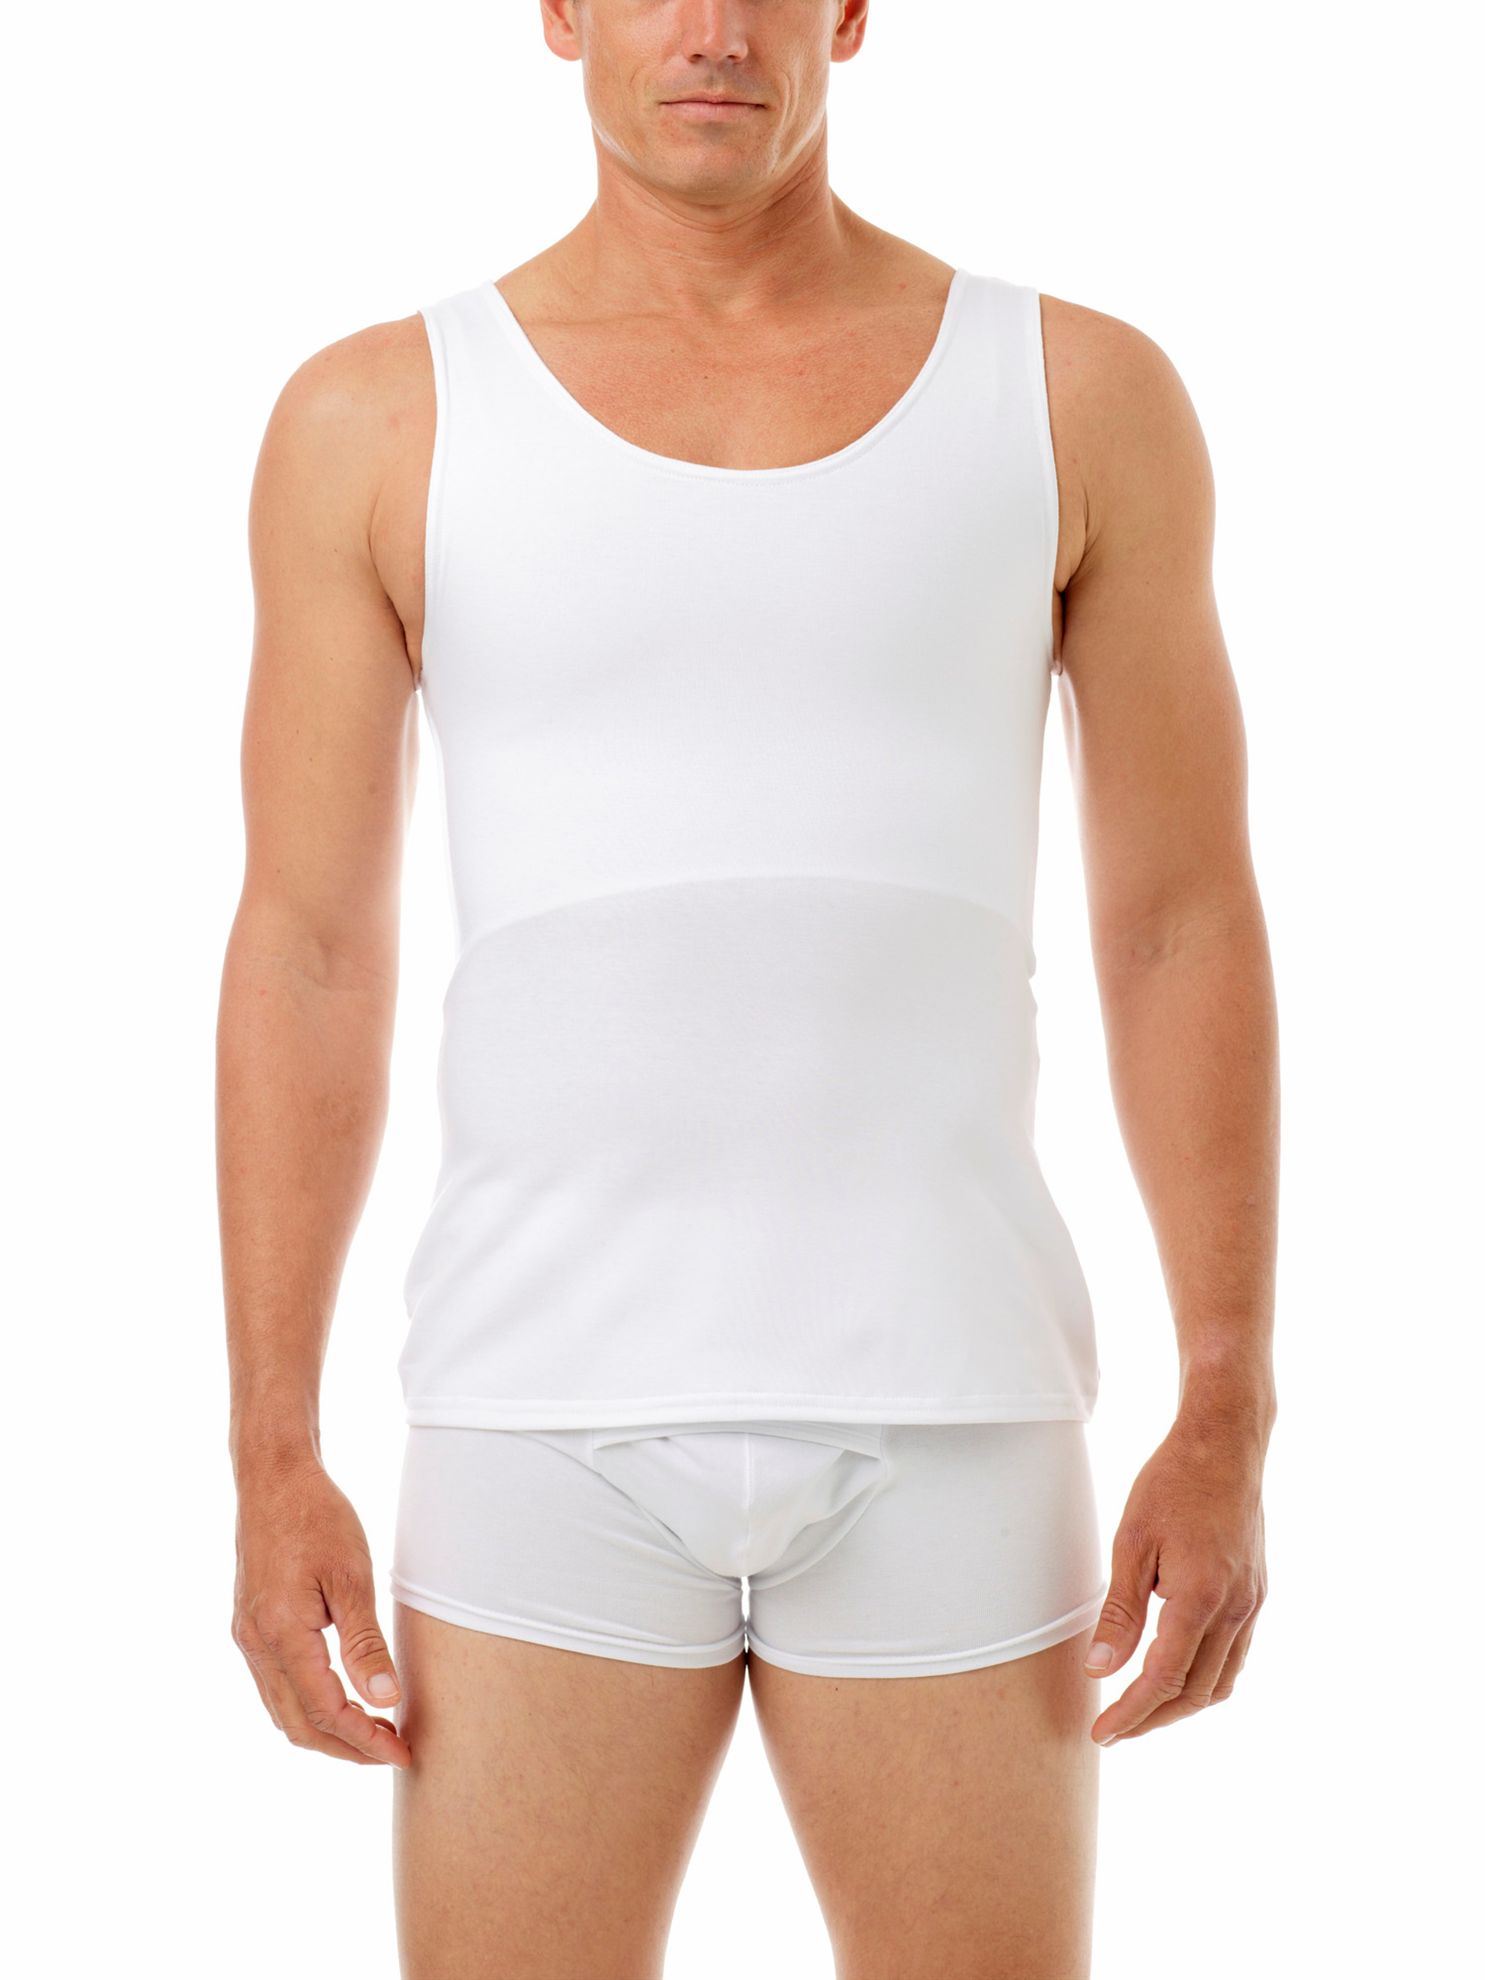 Men's Chest Binder Corset Flat Bust Undershirt Crop Tops Bodysuit